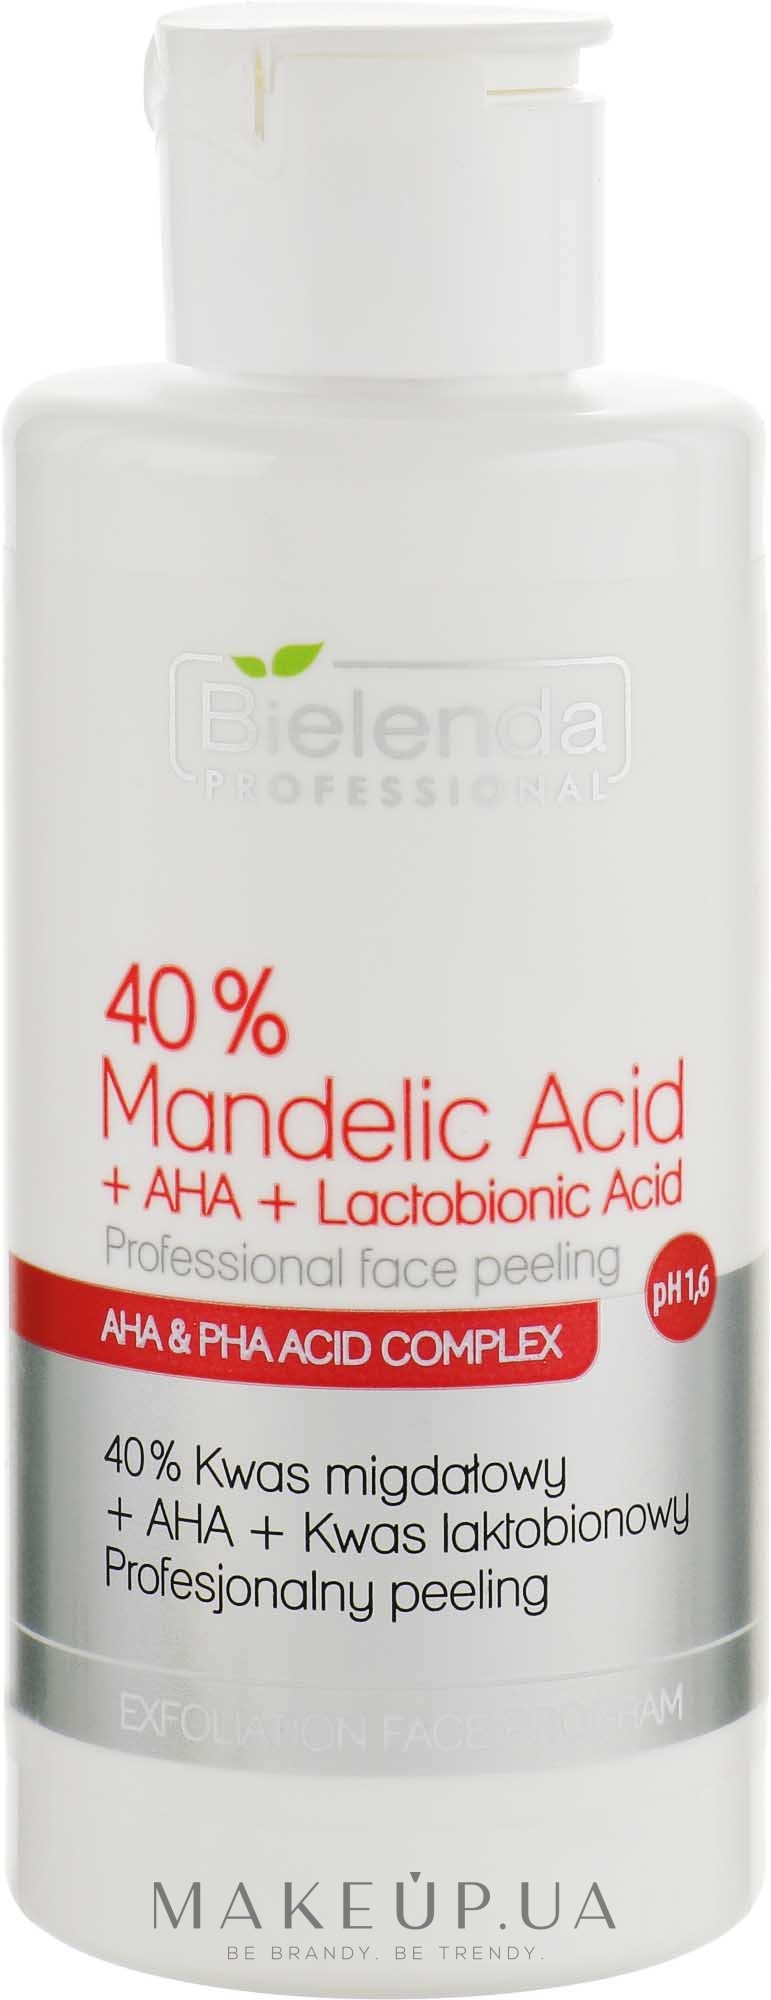 Професіональний пілінг "40% мигдалева кислота +АНА + лактобіонова кислота" - Bielenda Professional Exfoliation Face Program 40% Mandelic Acid + AHA + Lactobionic Acid — фото 150g